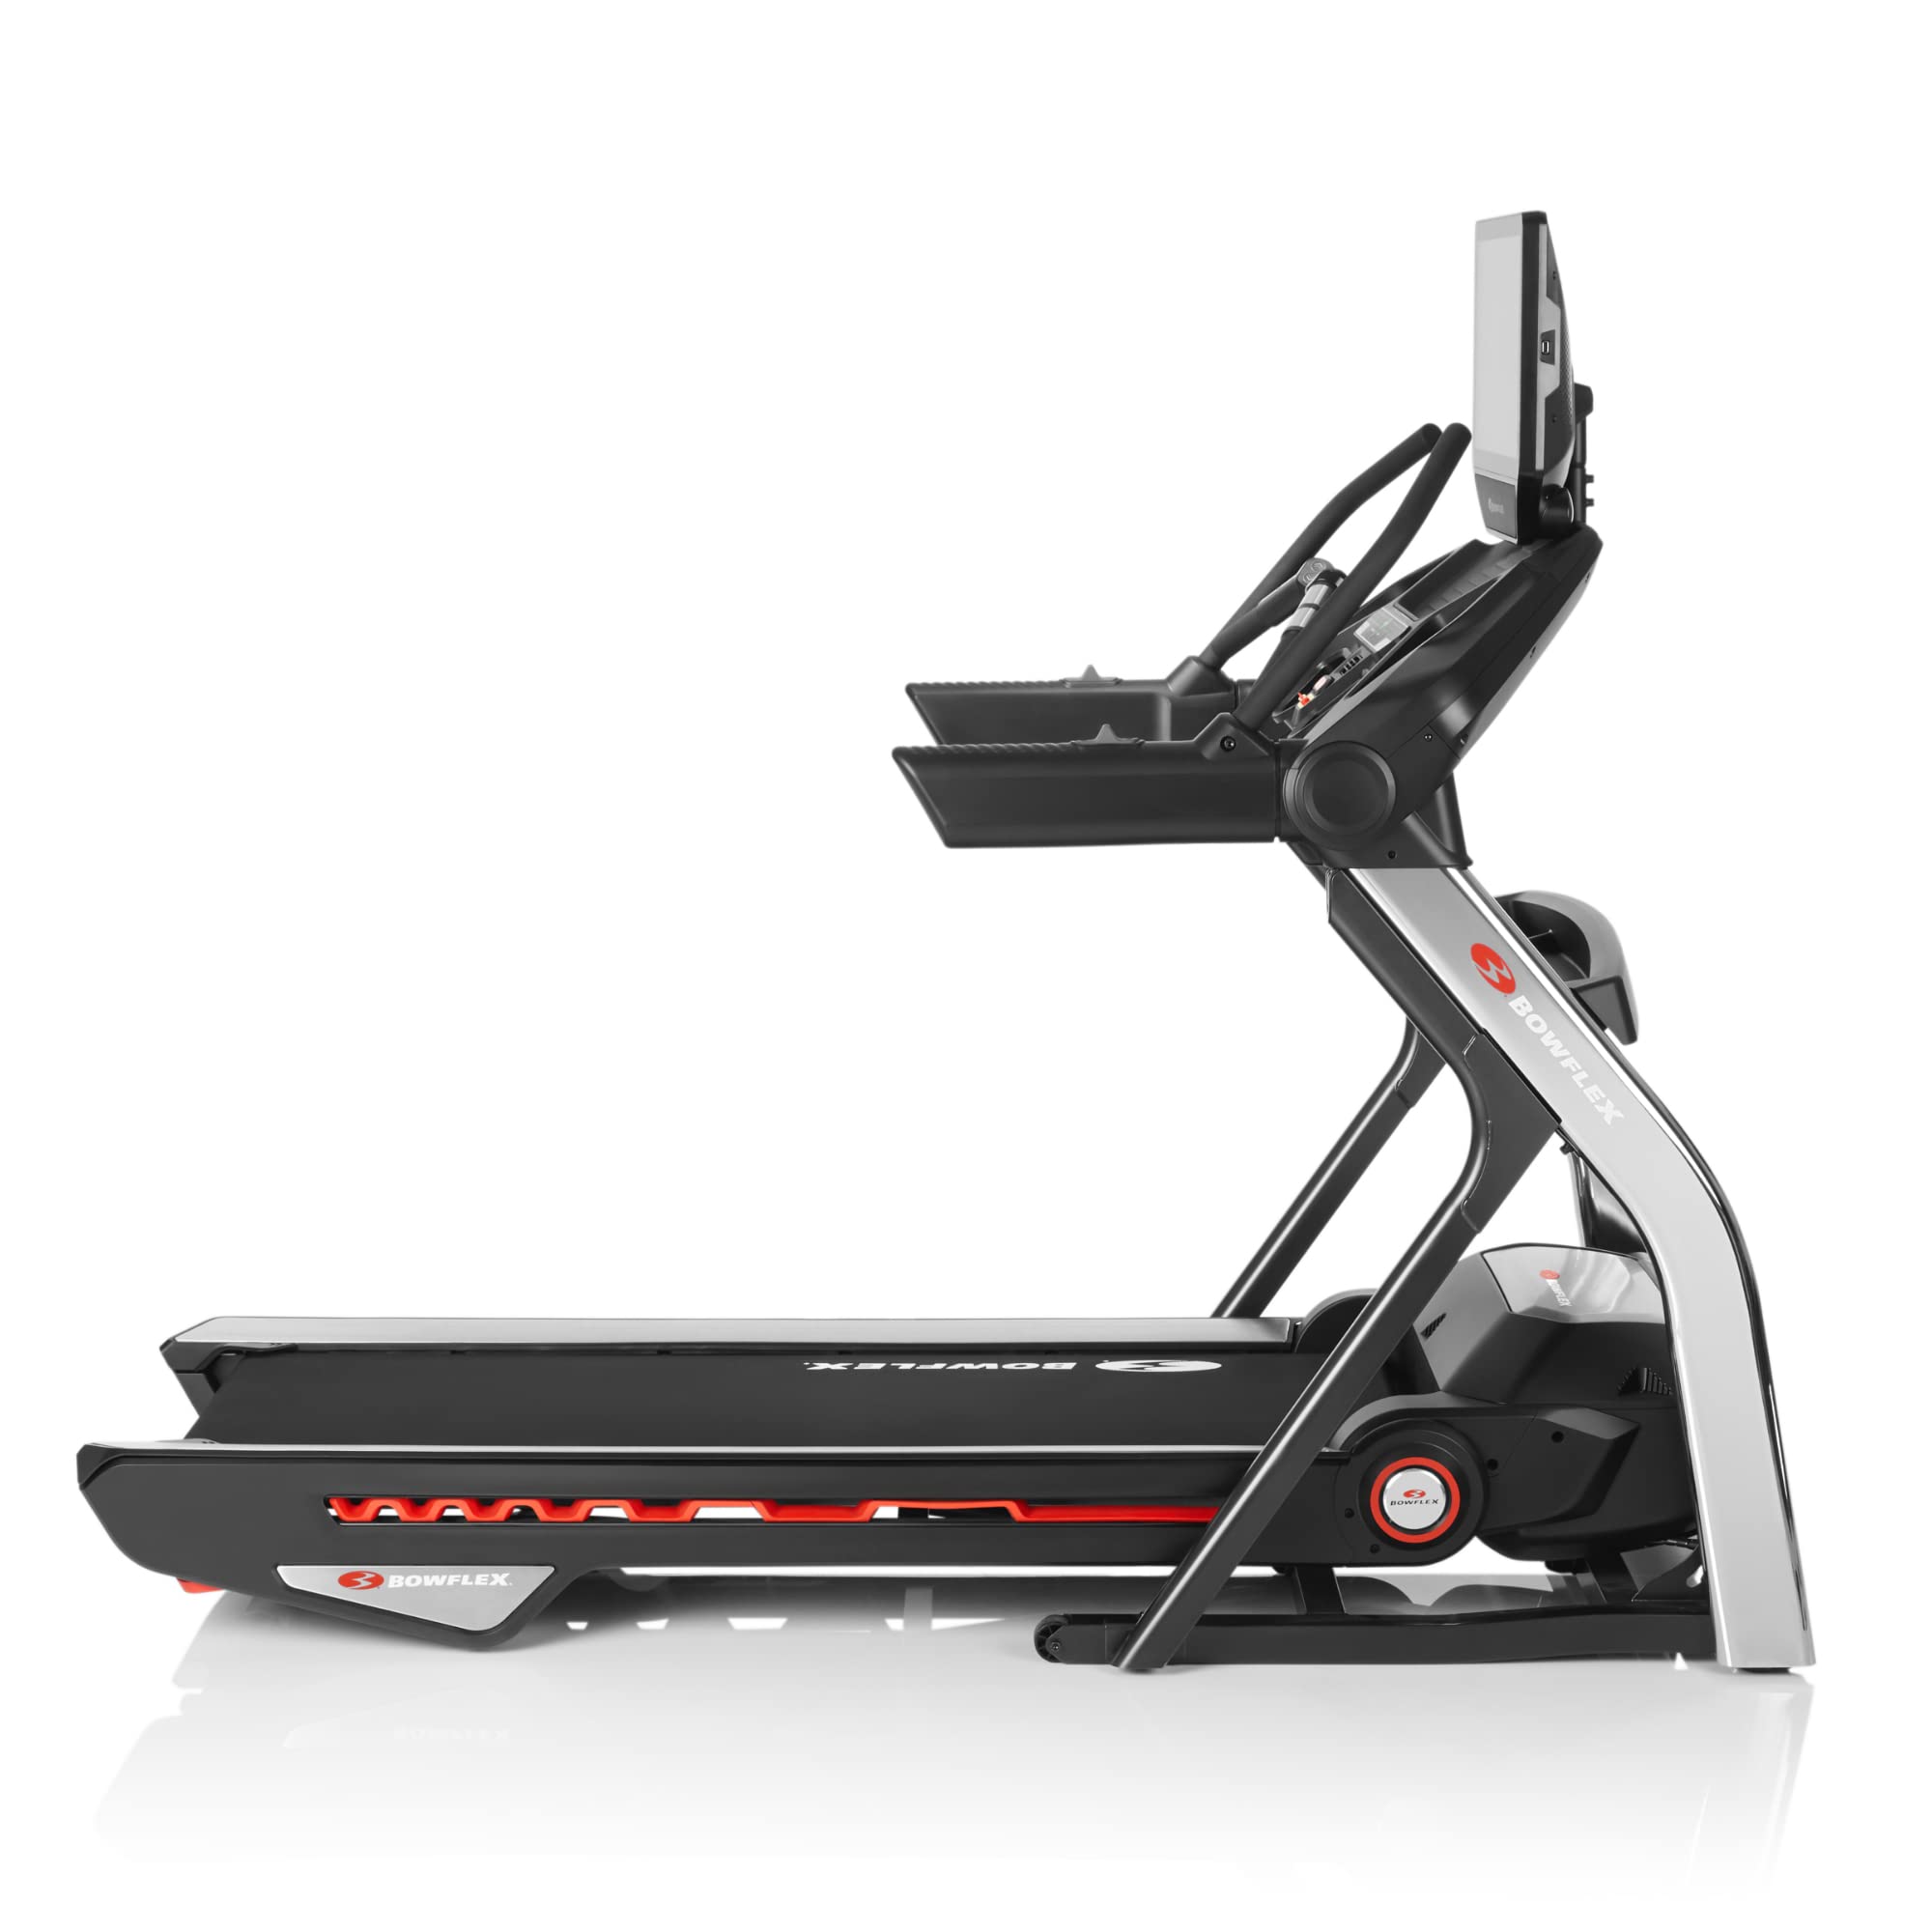 Bowflex Treadmill Series